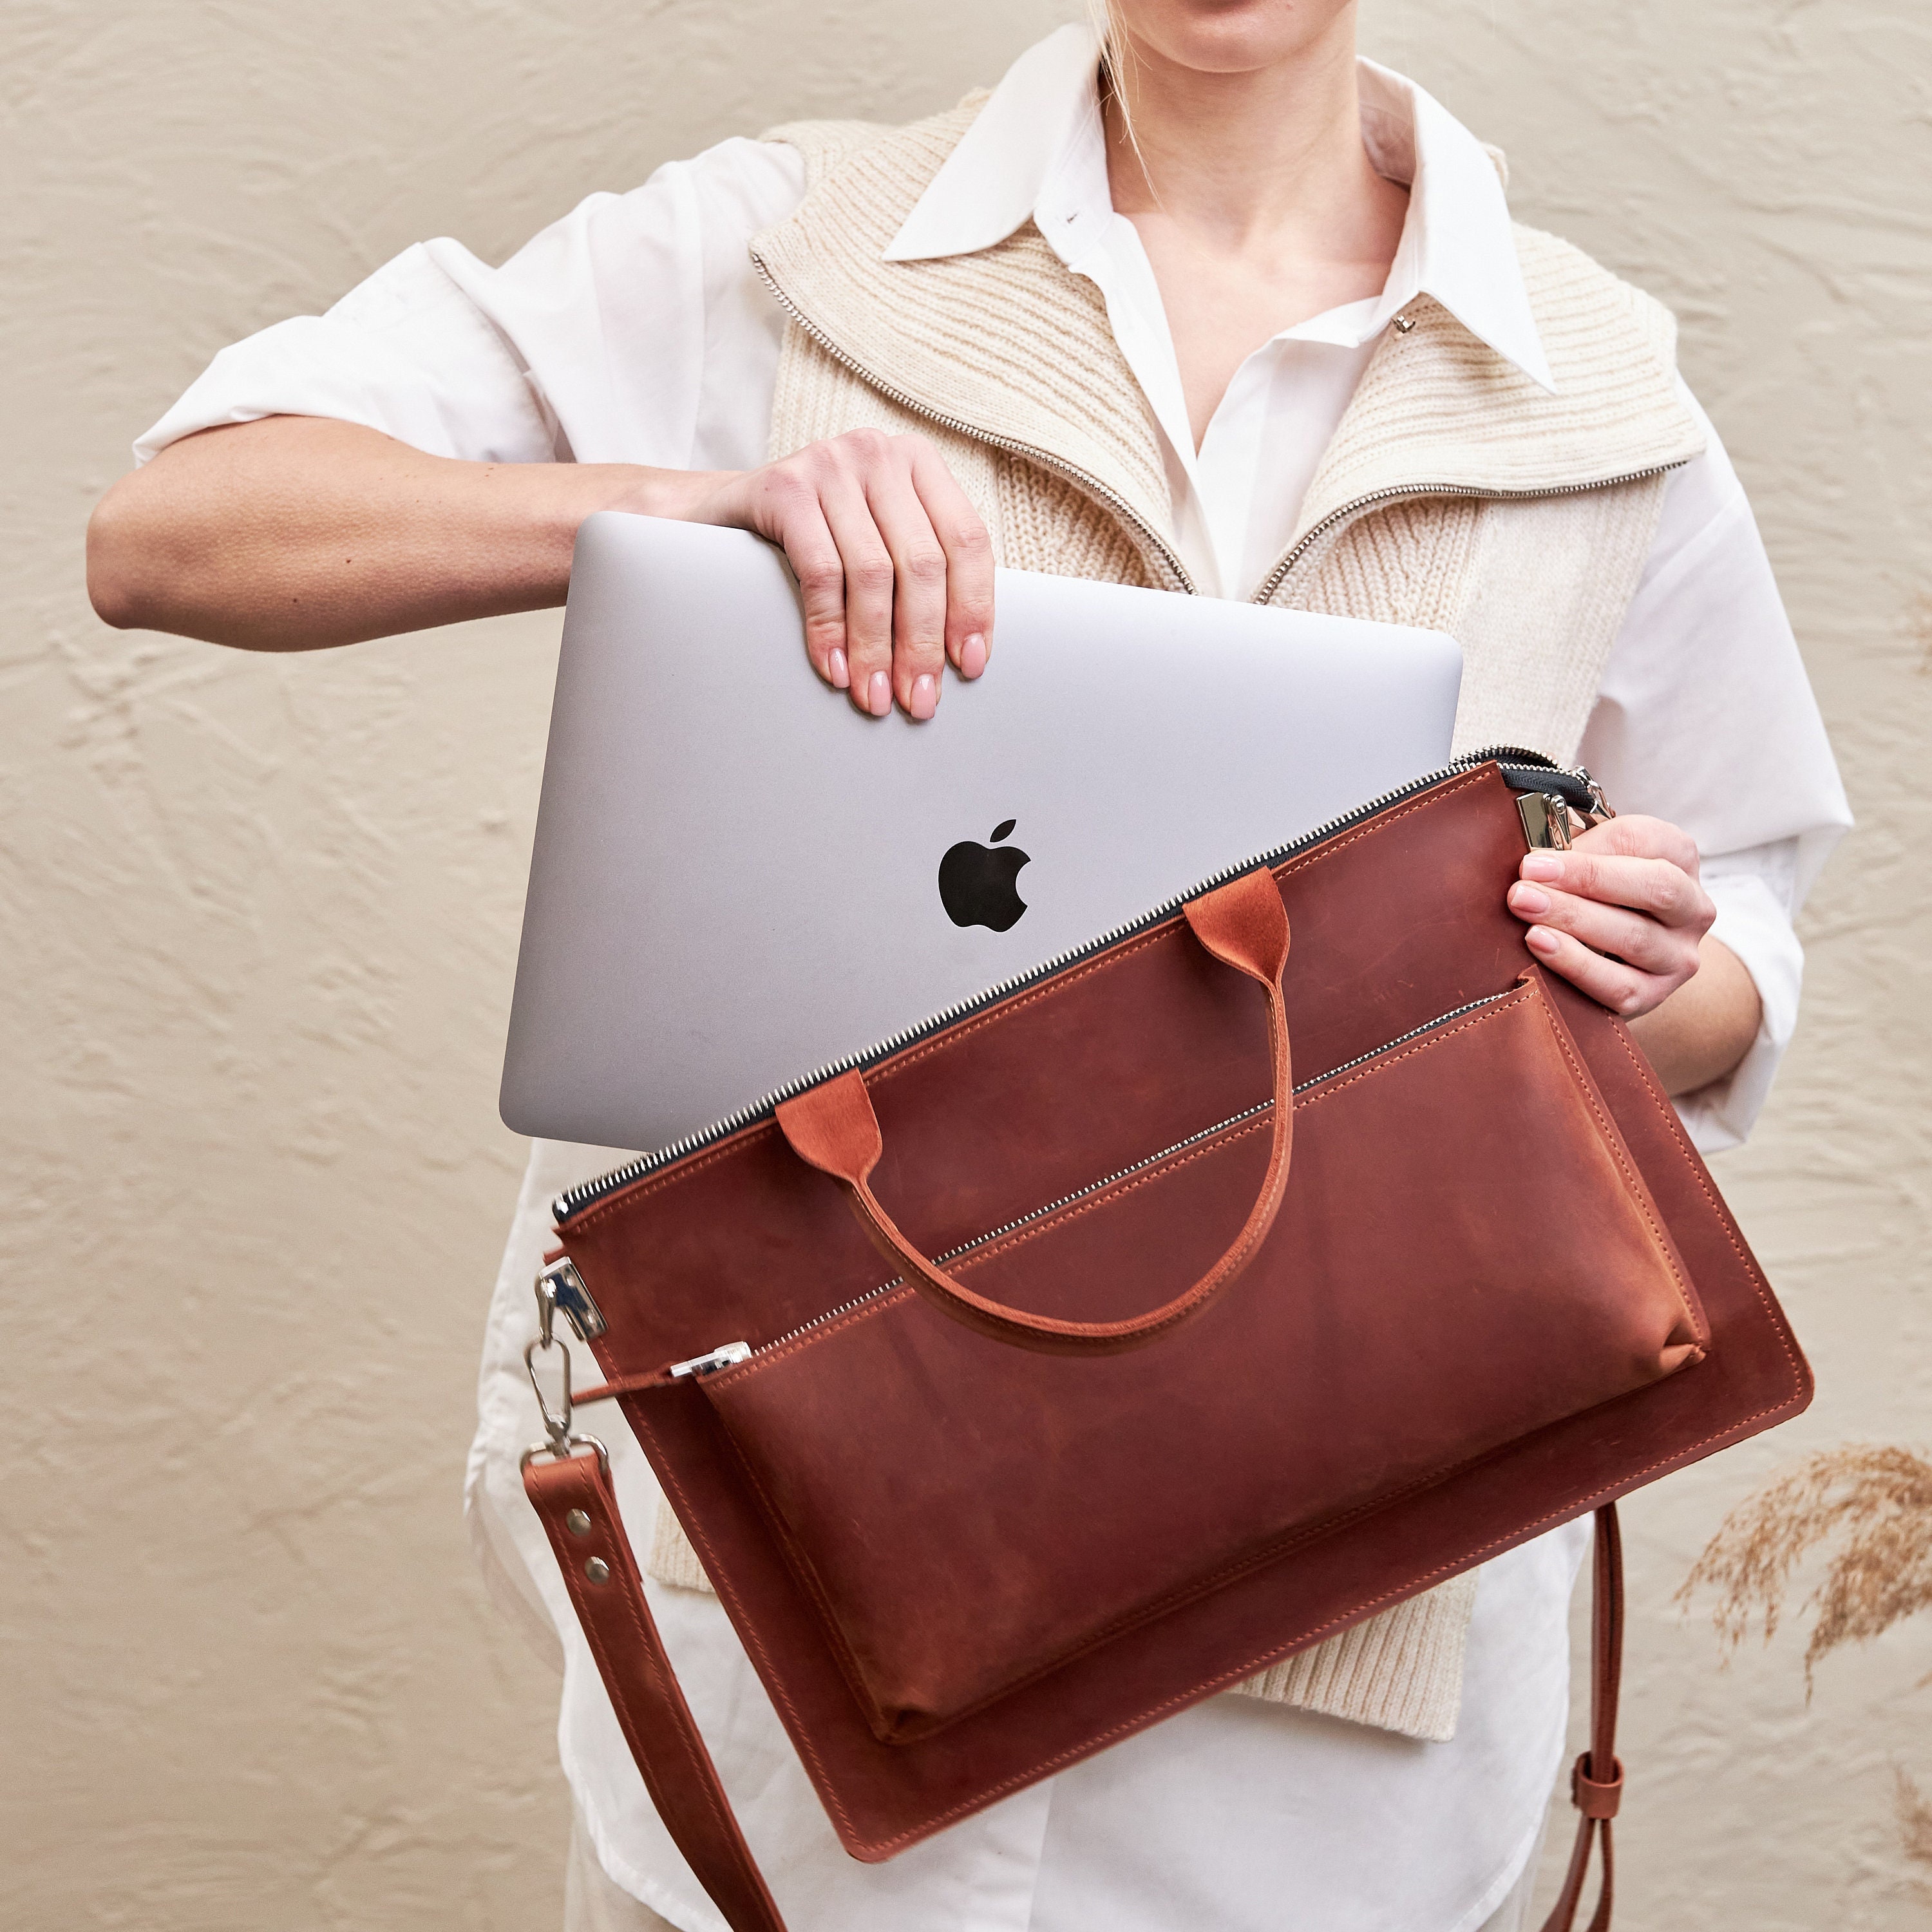  Snake Skin Animal Print Laptop Tote Bag for Woman 15.6